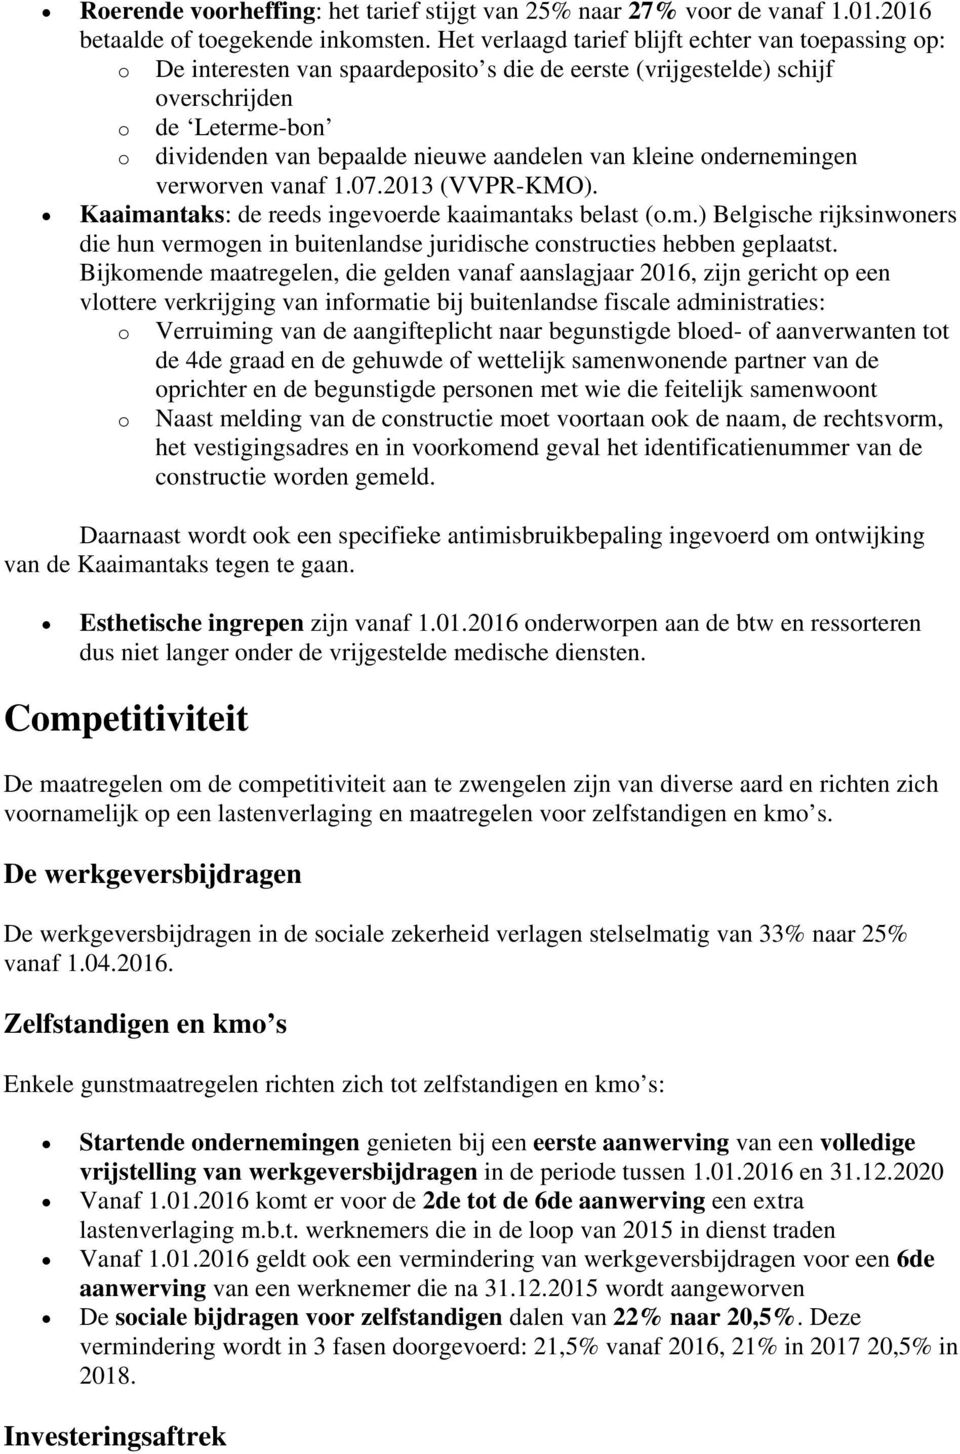 van kleine ondernemingen verworven vanaf 1.07.2013 (VVPR-KMO). Kaaimantaks: de reeds ingevoerde kaaimantaks belast (o.m.) Belgische rijksinwoners die hun vermogen in buitenlandse juridische constructies hebben geplaatst.